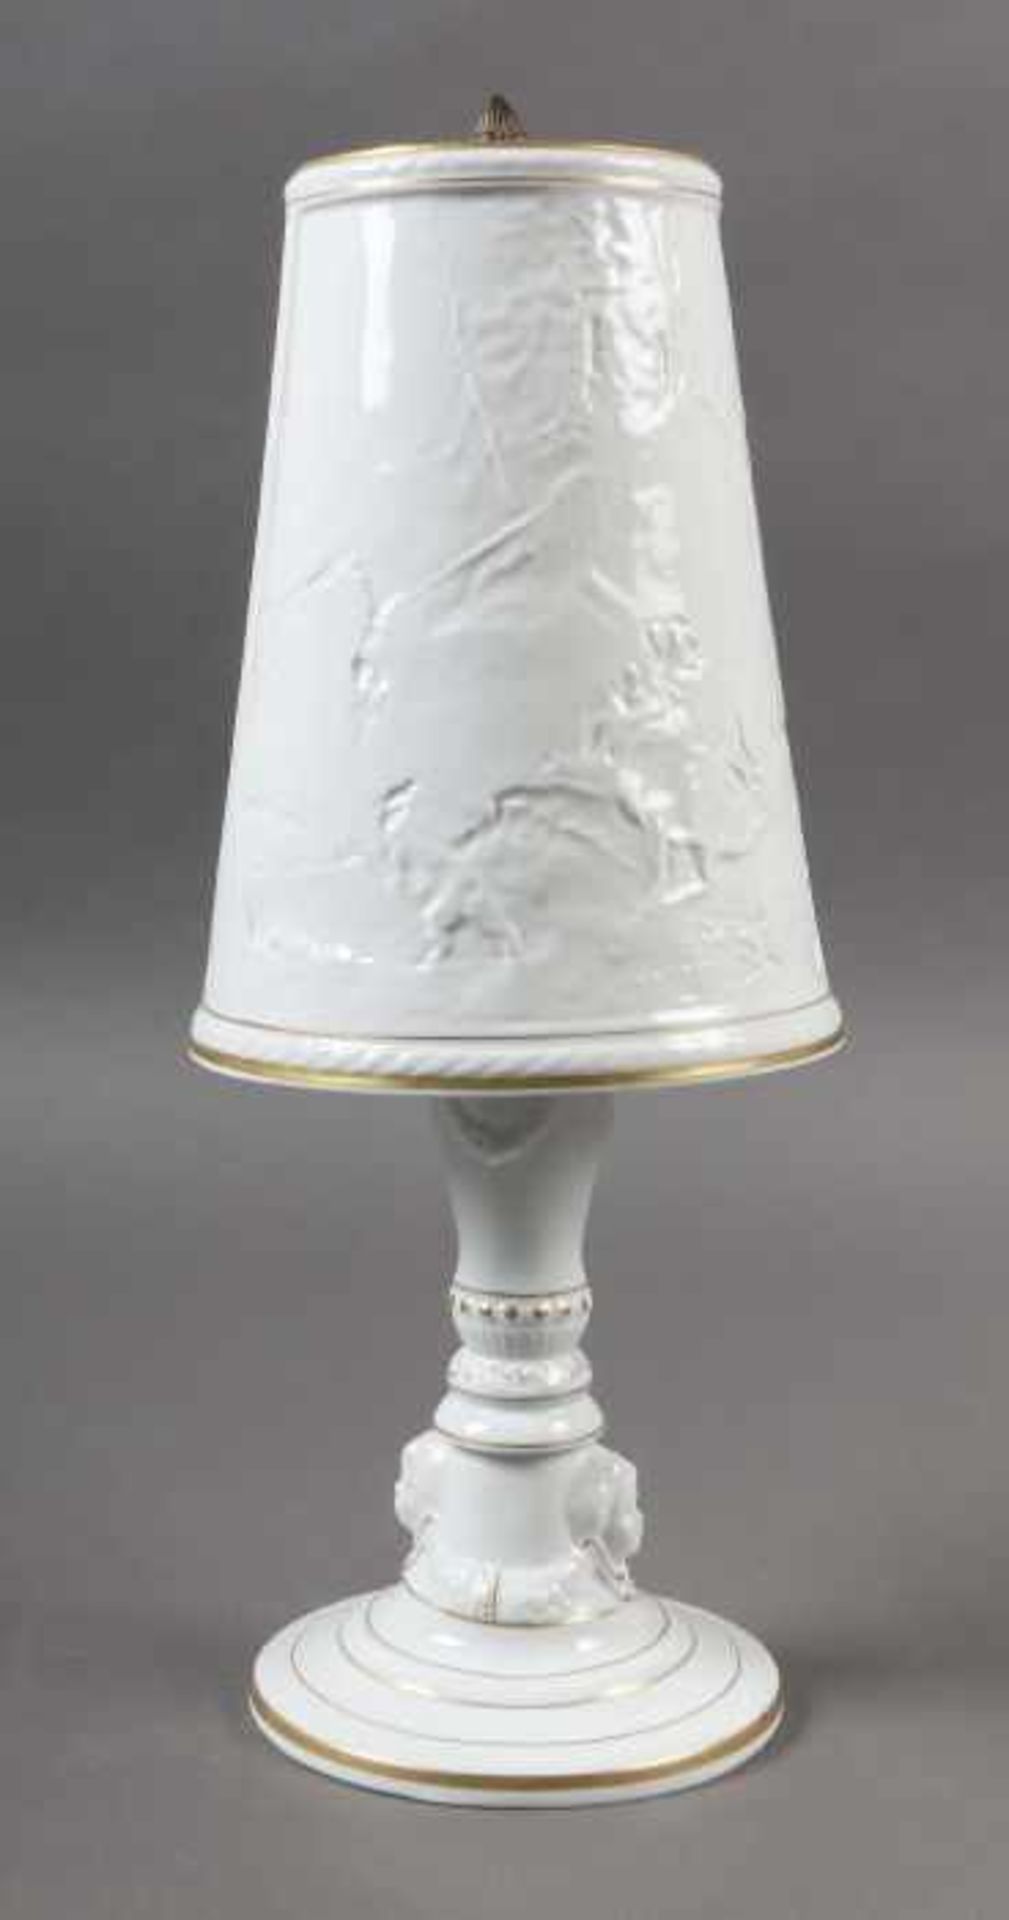 Lithophanie-LampeVEB Porzellanmanufaktur Plaue, vormals Von Schierholz, 1992, Porzellan, glasiert,